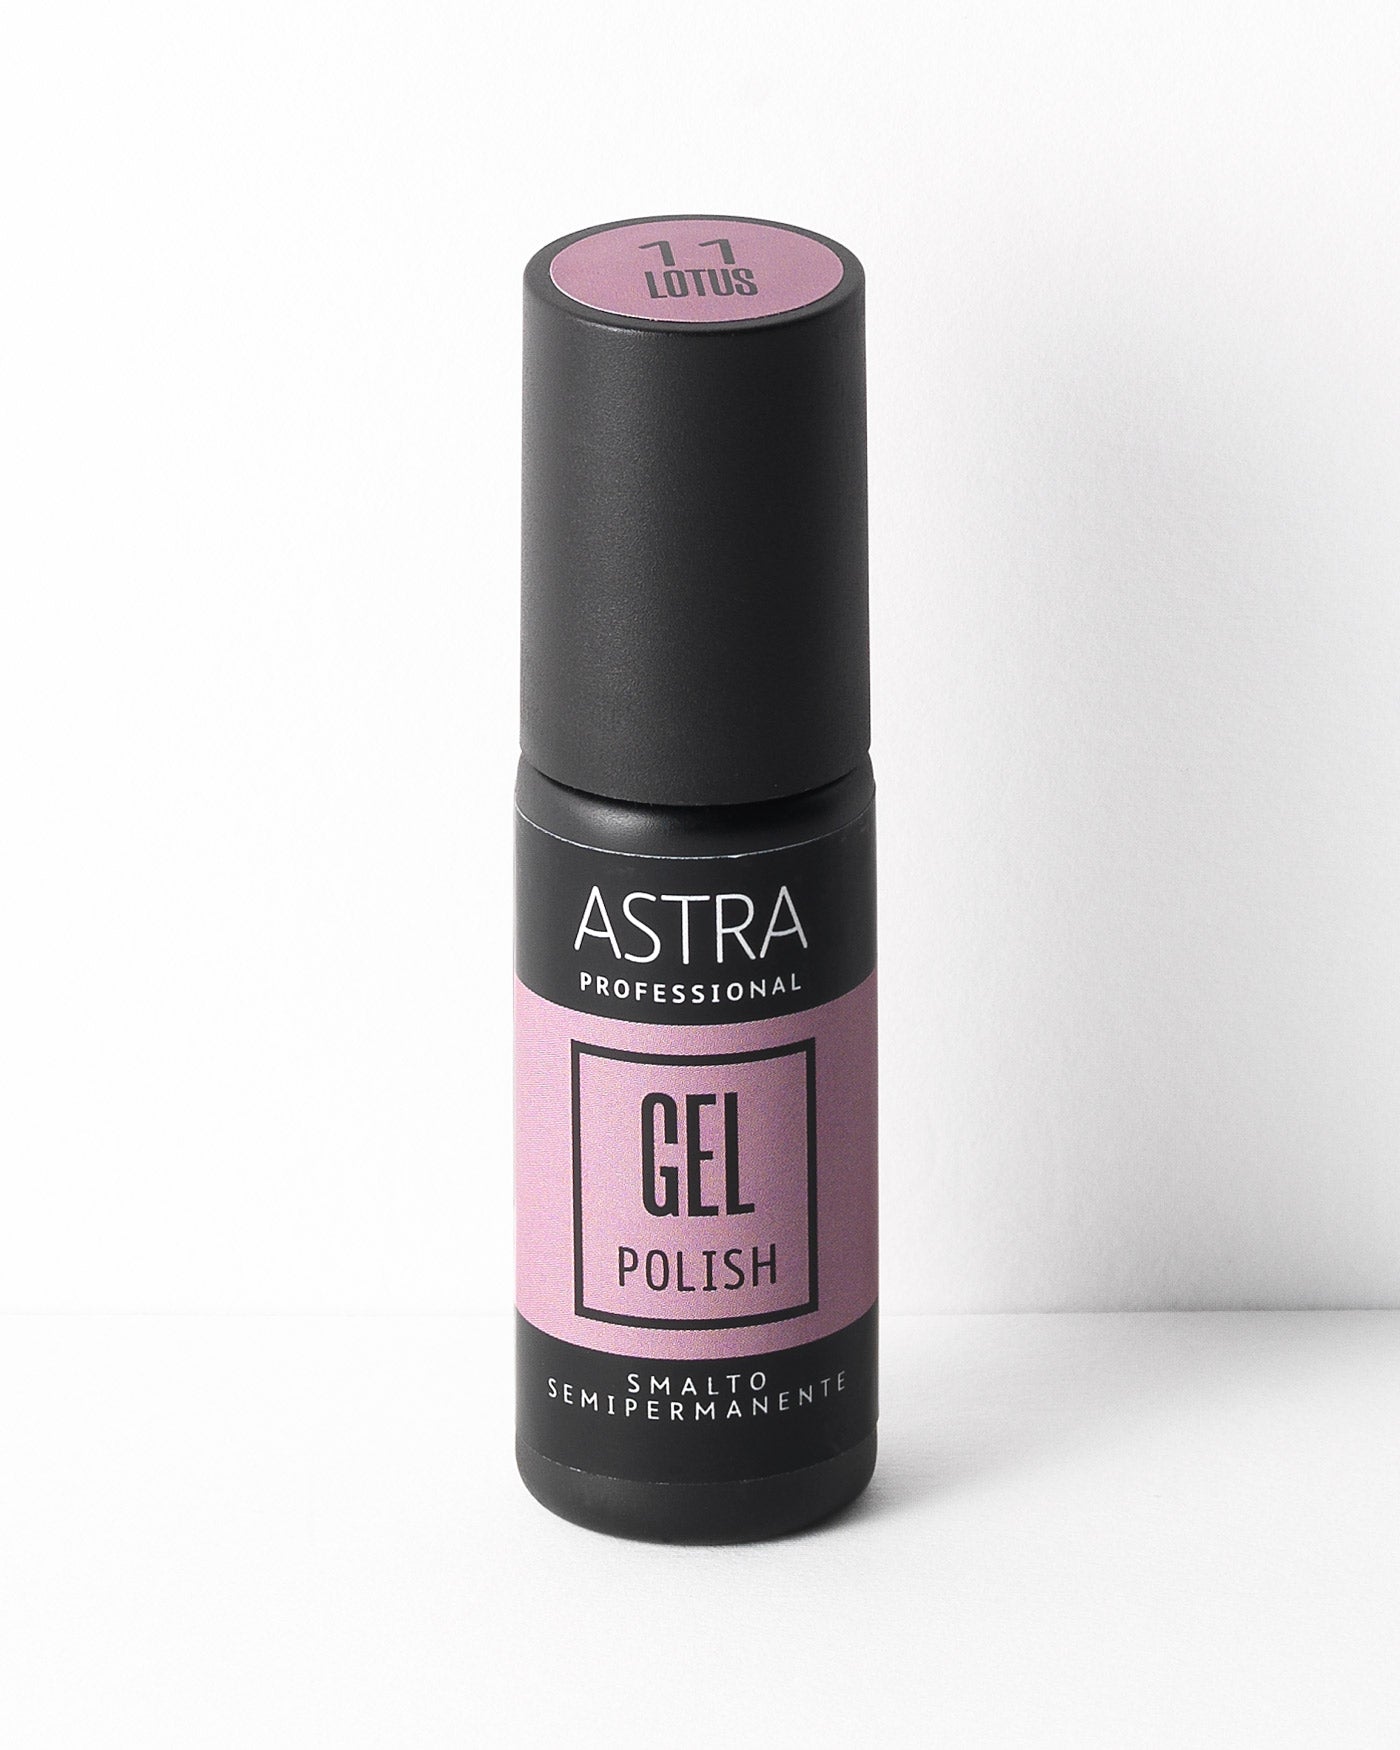 PROFESSIONAL GEL POLISH - 11 - Lotus - Astra Make-Up